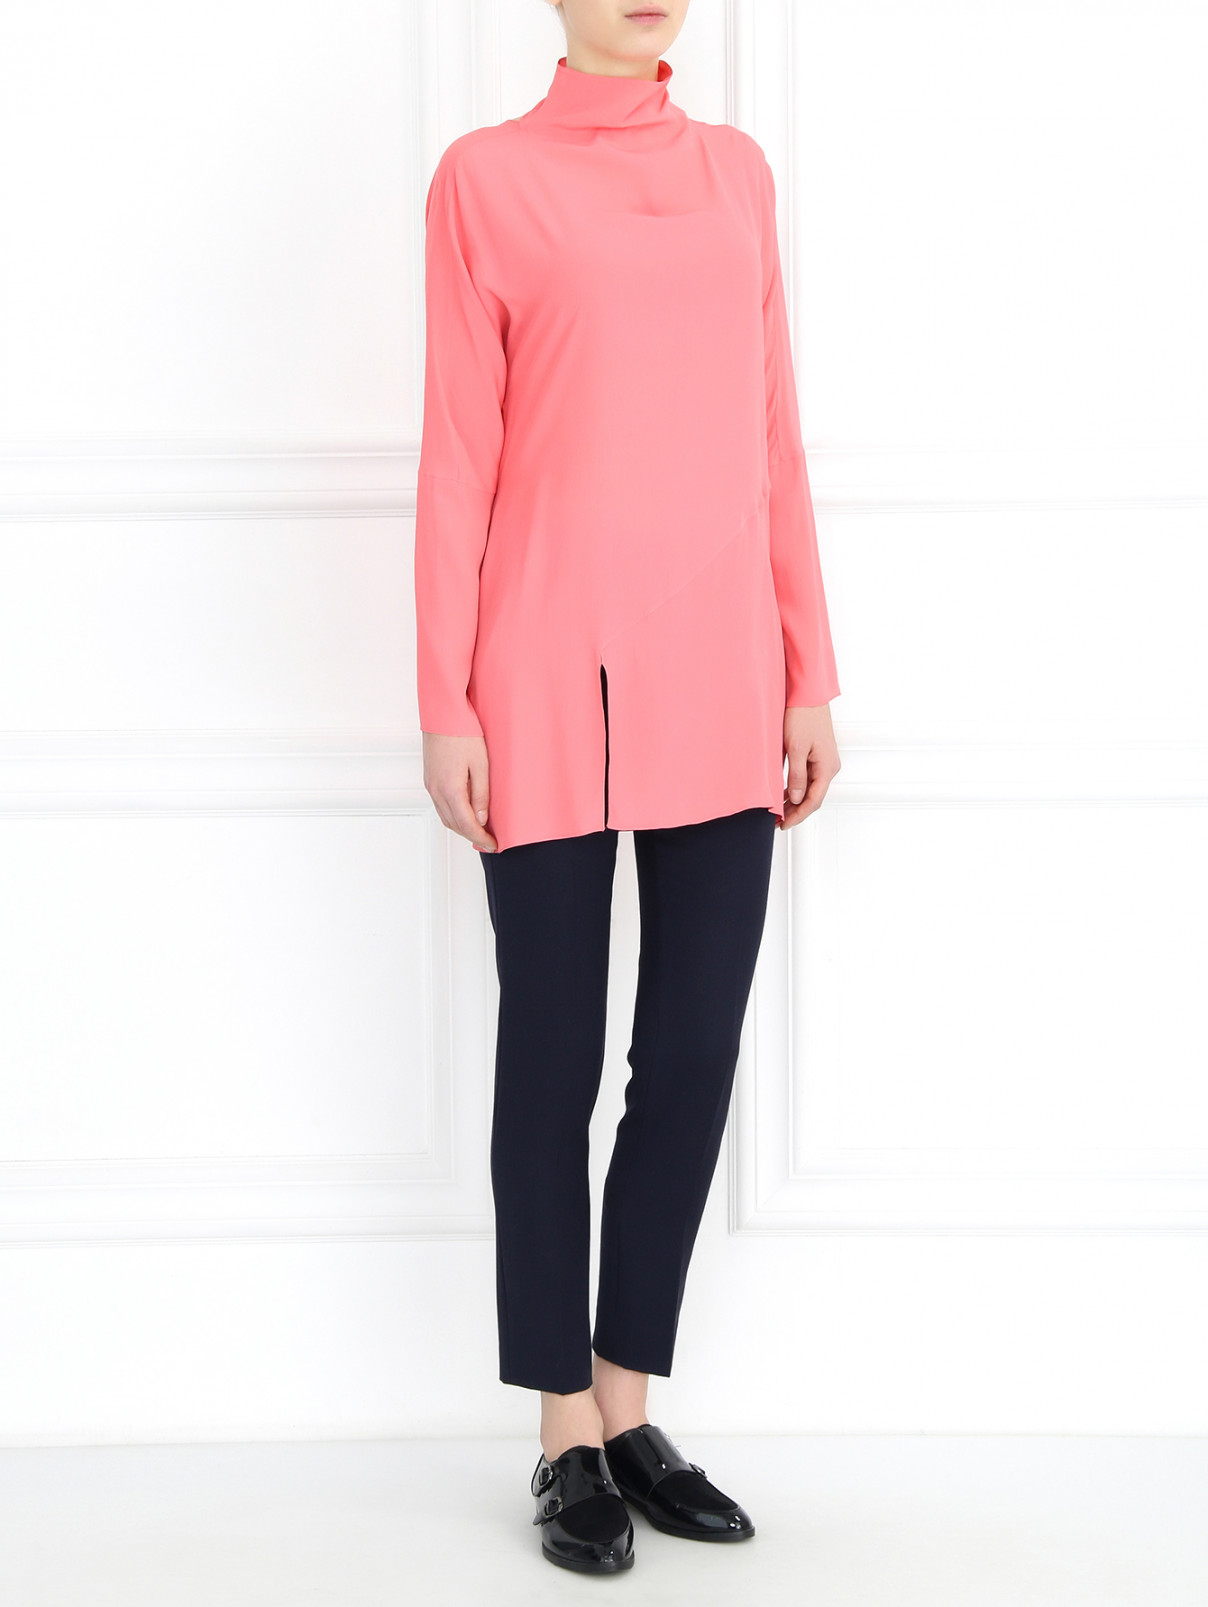 Удлиненная блуза с драпировкой Antonio Marras  –  Модель Общий вид  – Цвет:  Розовый